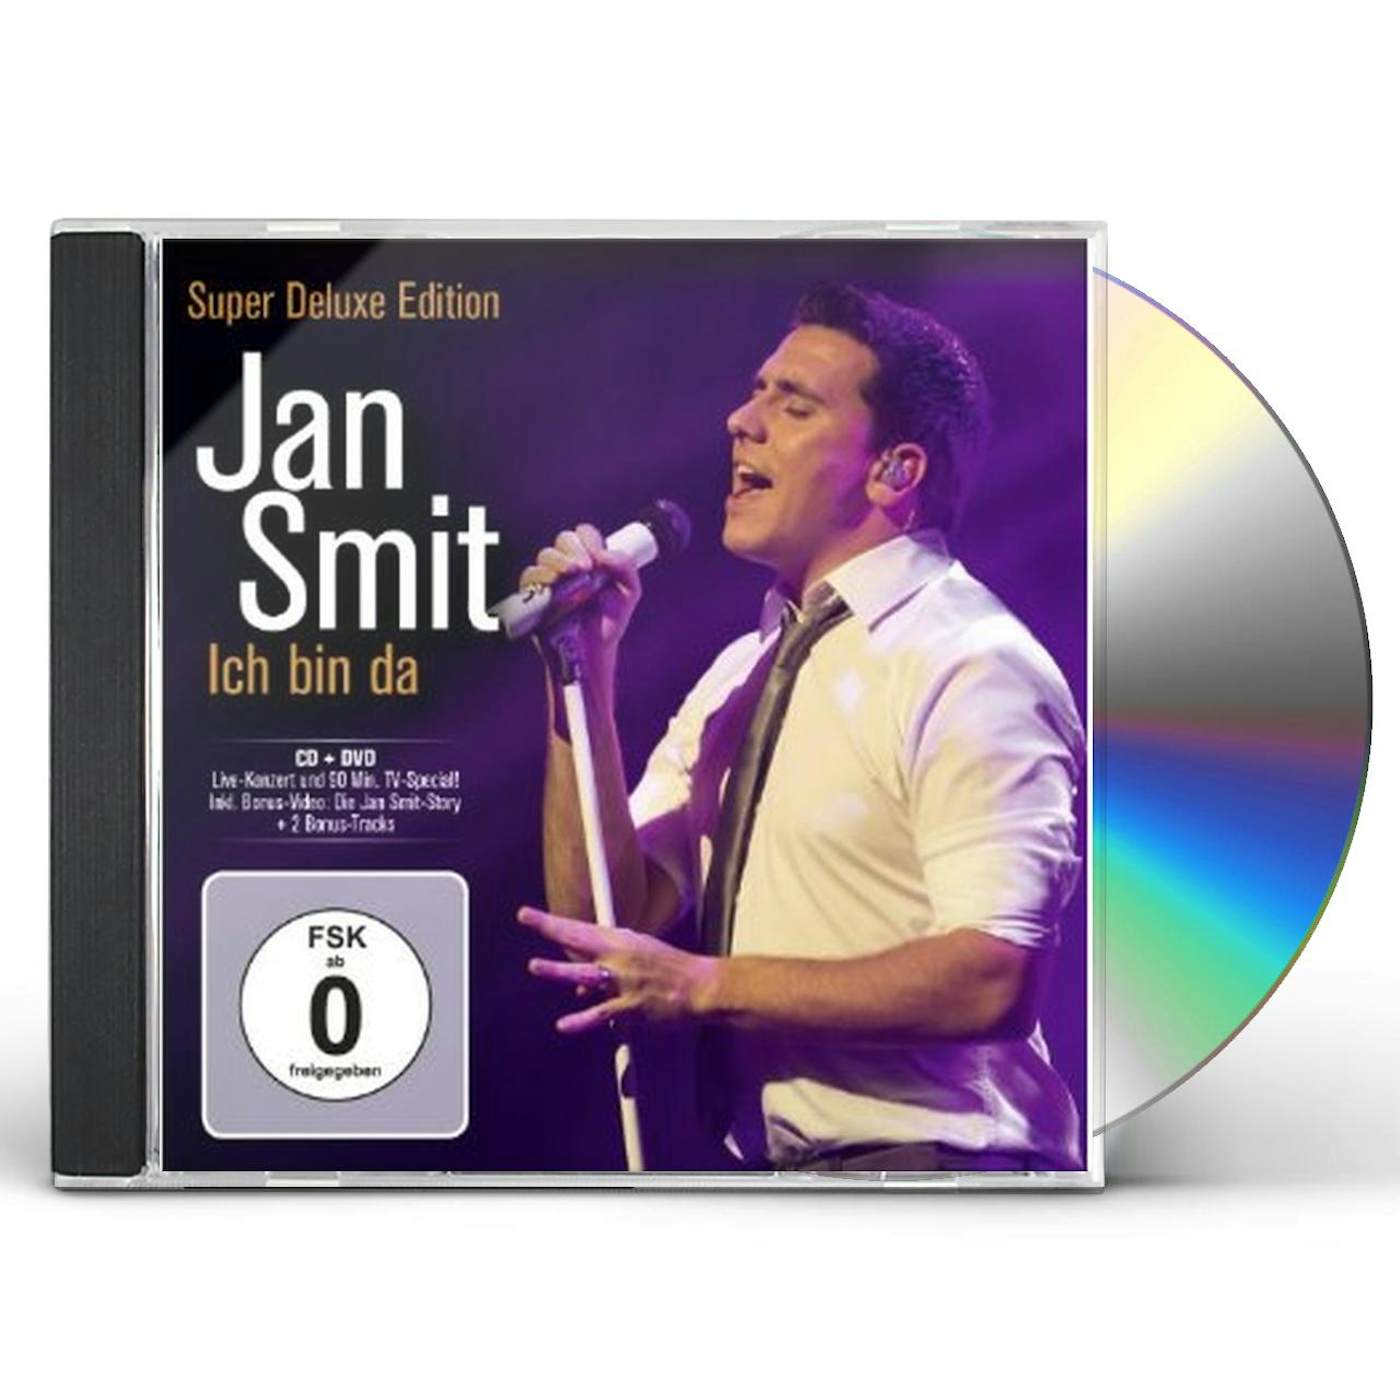 Jan Smit ICH BIN DA CD